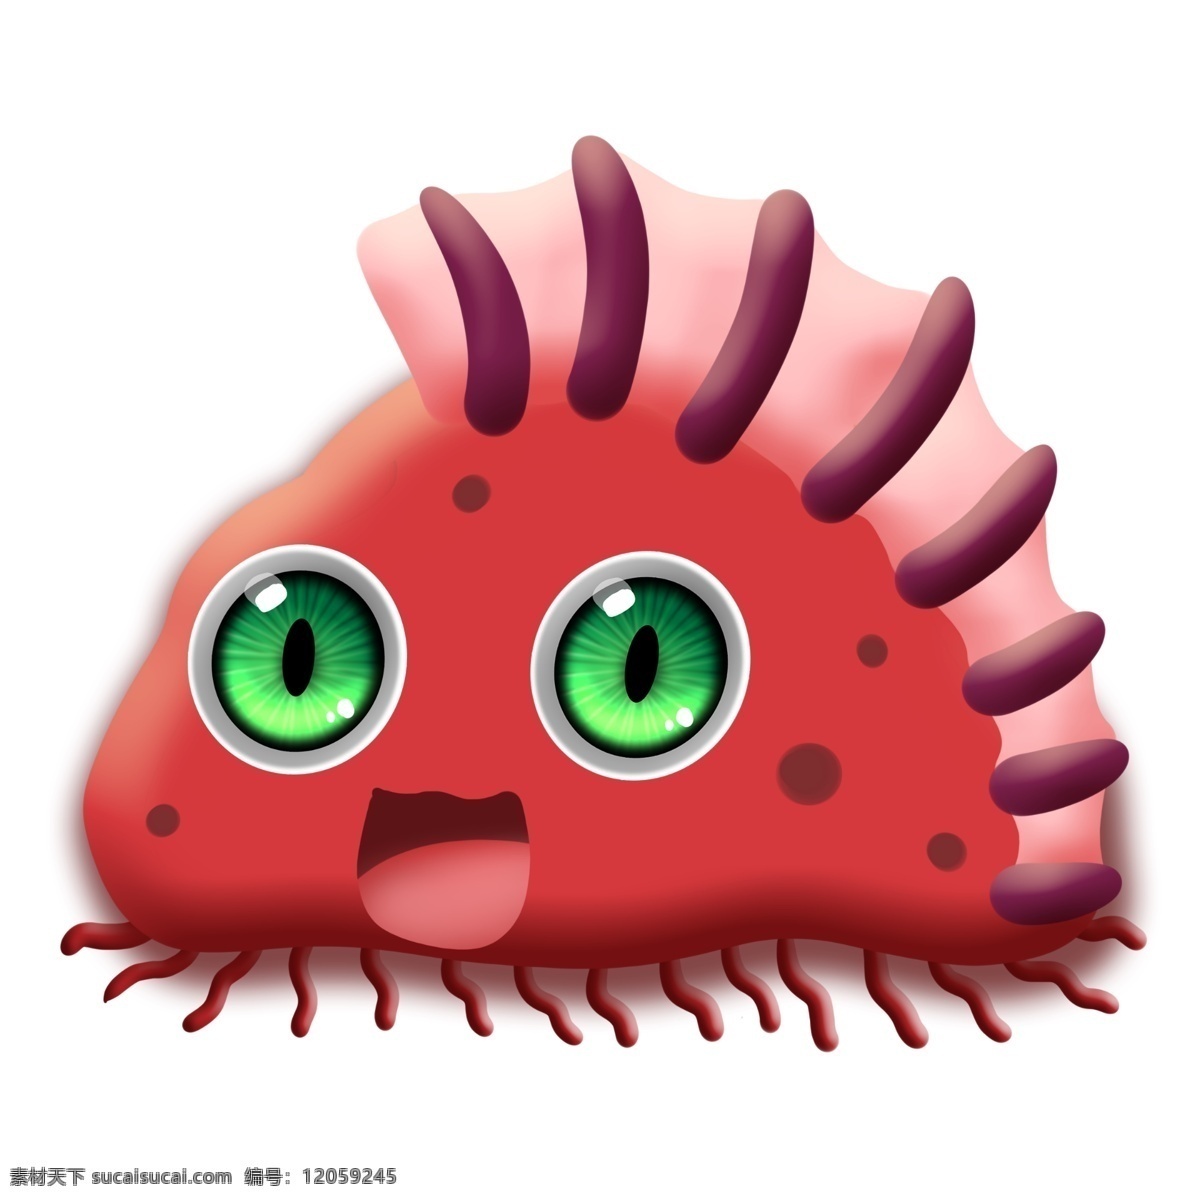 红色 斑点 病毒 细菌 卡通 大眼睛 杆菌 医学 生物 害怕 恶魔 冷笑 疾病 生病 菌体 菌状 细胞